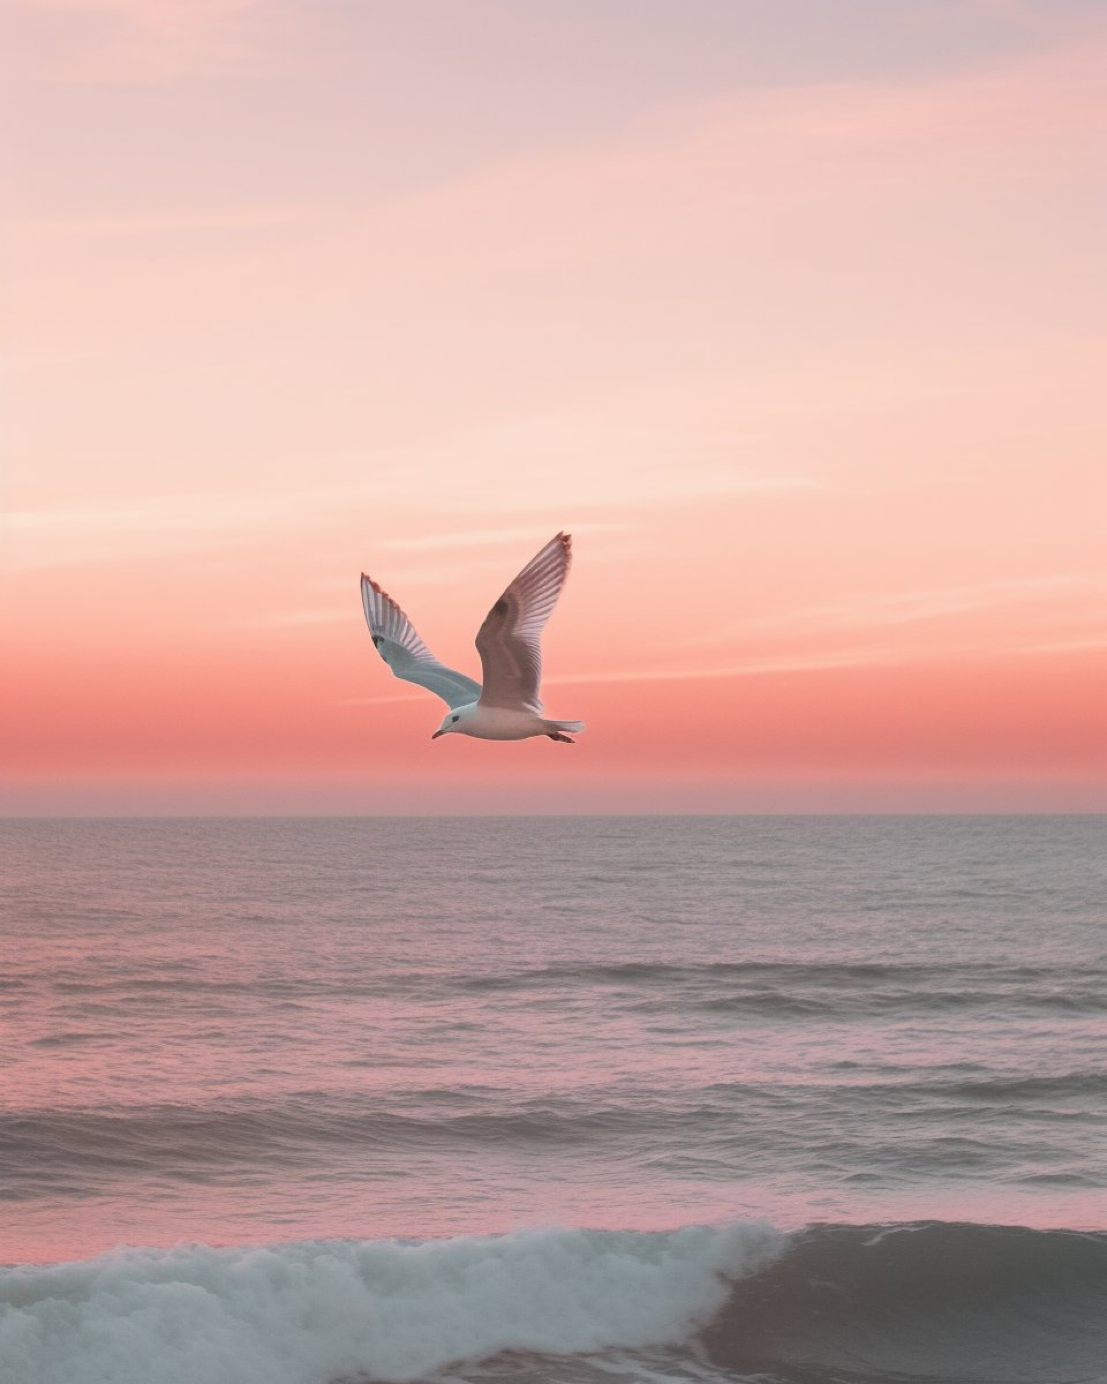 cinematic shot of seagull flying over ocean, minimalism, soft pink color grading, soft pink dusk, 35mm lens --ar 4:5